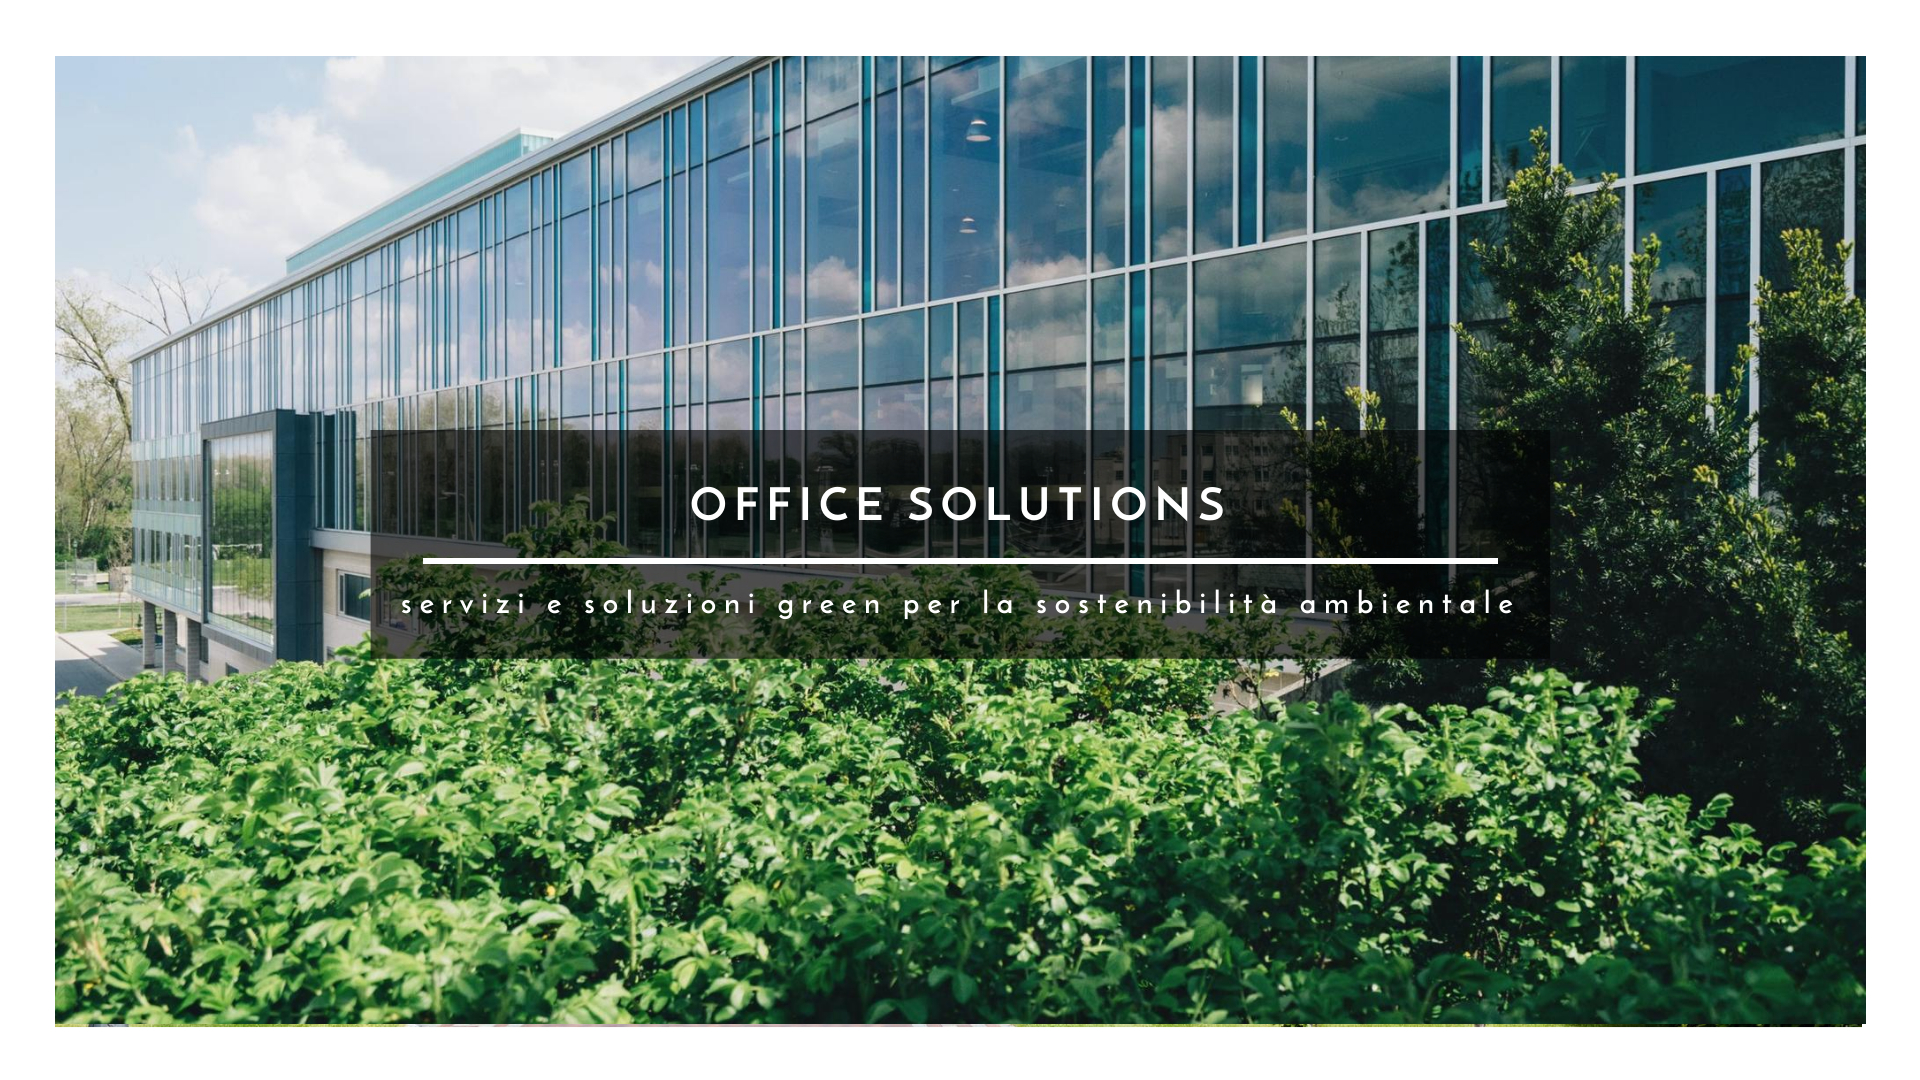 Office Solutions servizi e soluzioni green per la sostenibilità ambientale